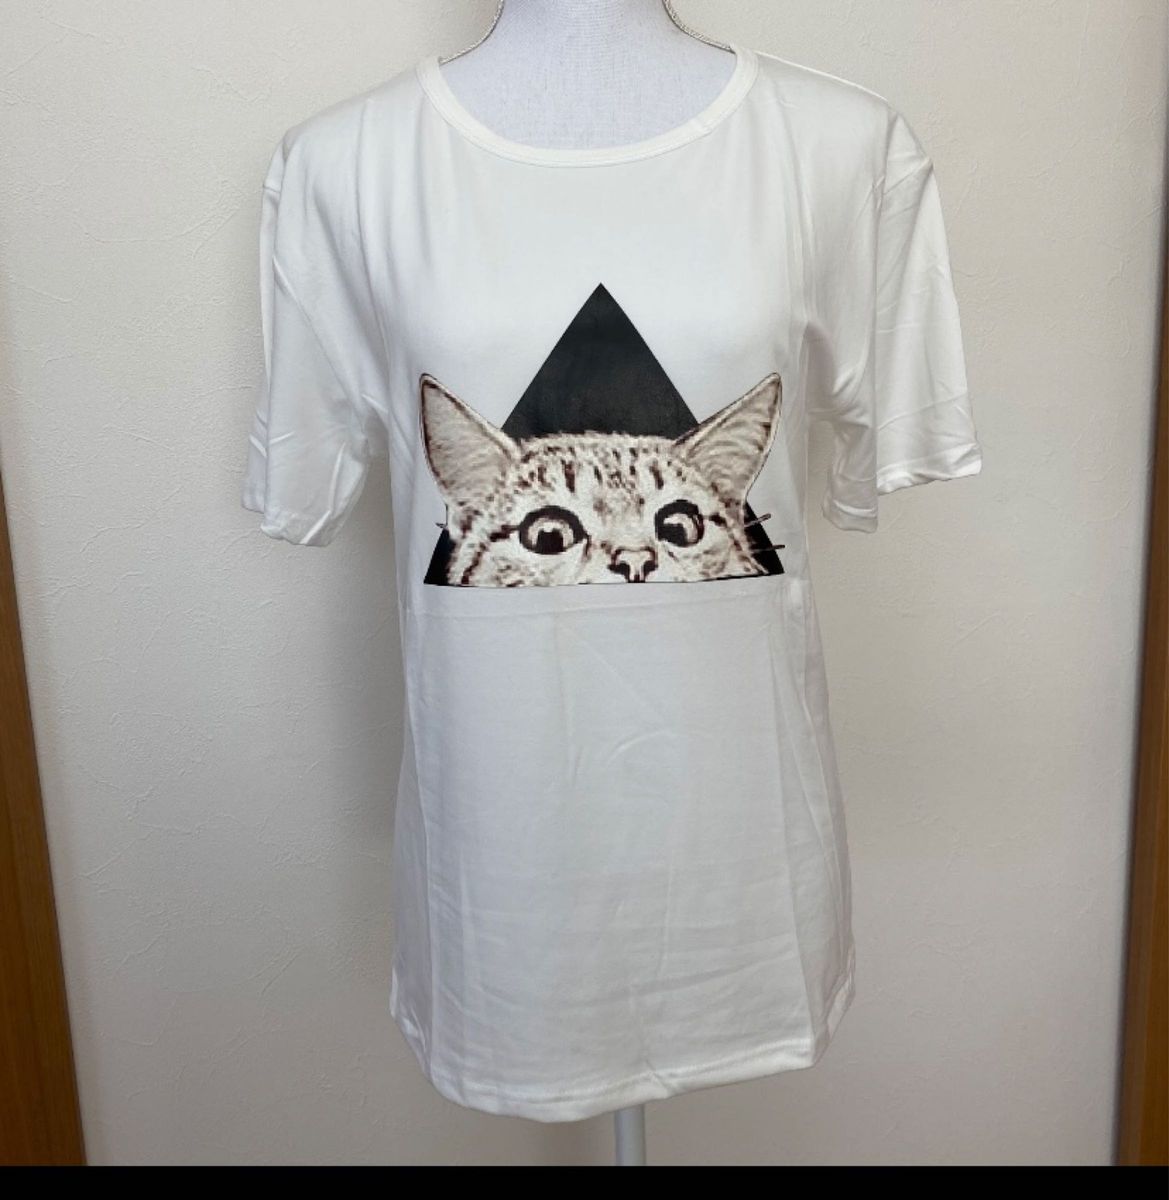 プリントTシャツ  猫   アニマル柄   韓国  ファッション  寝巻きOK   最終お値下げしました